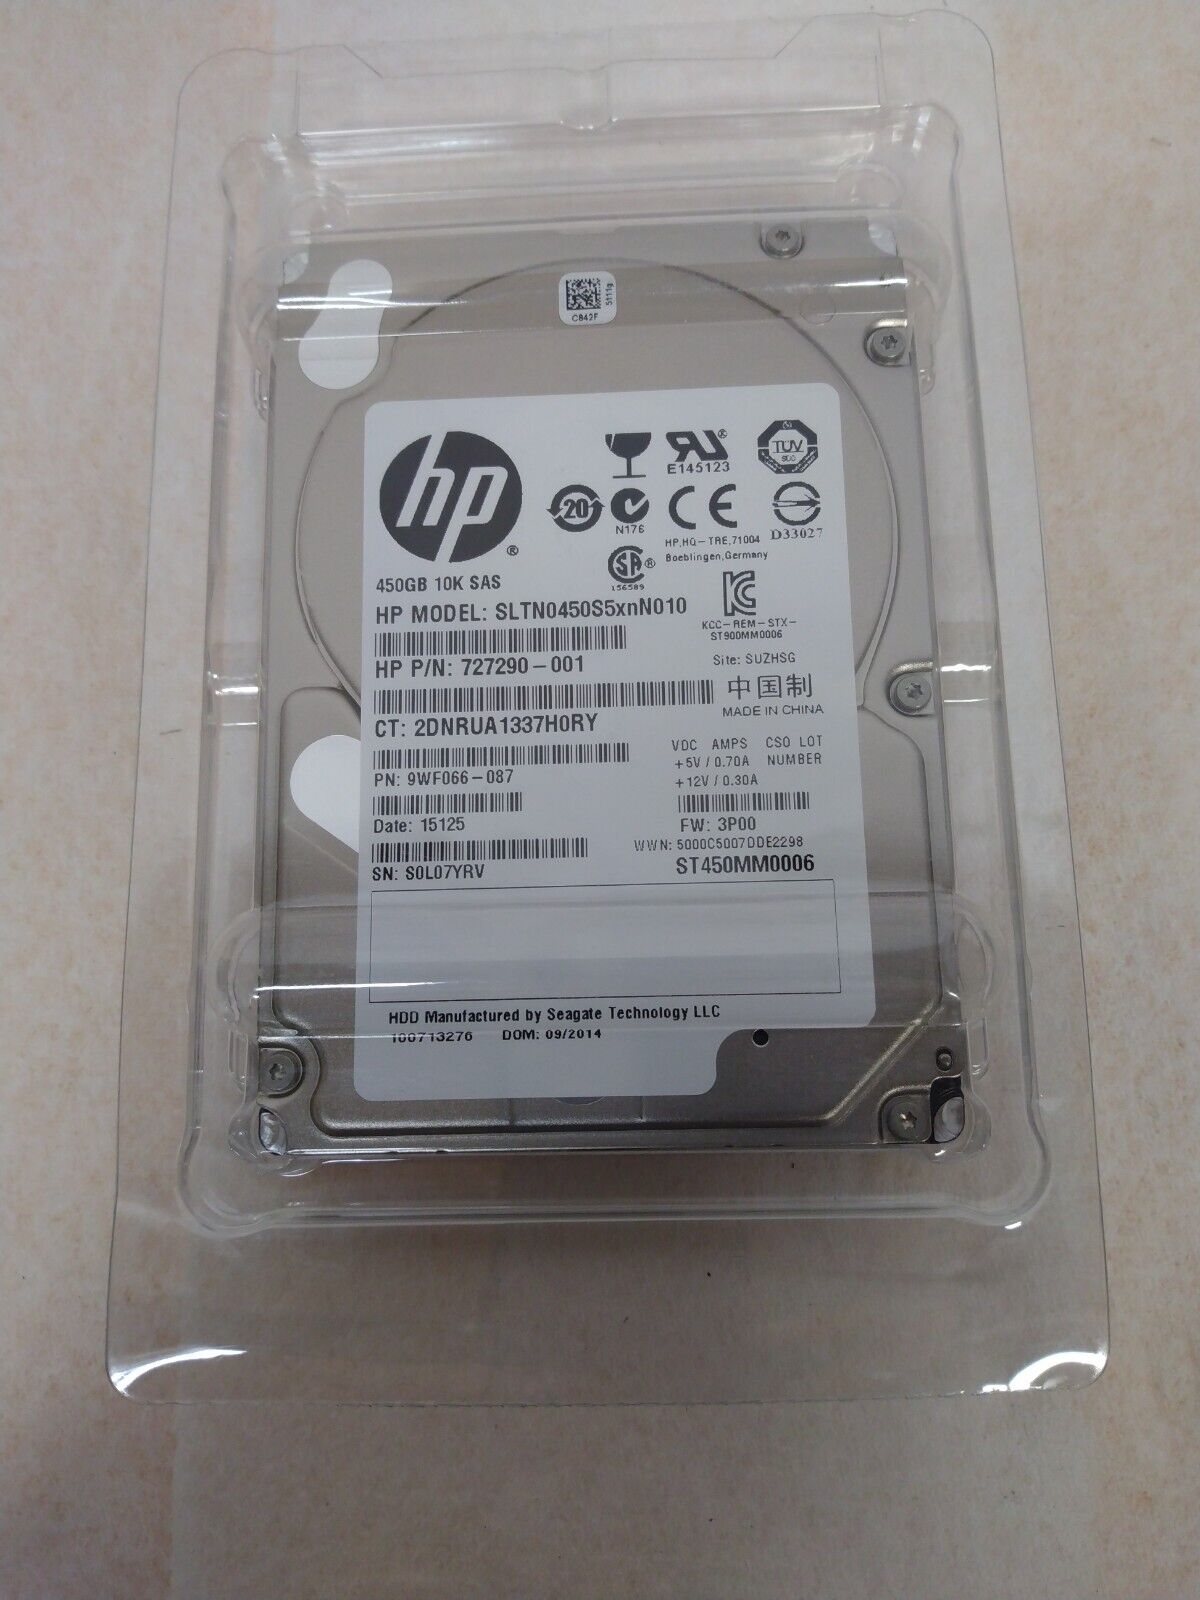 HP 450GB 10K SAS SLTN0450S5xnN010 ST450MM0006 NEW